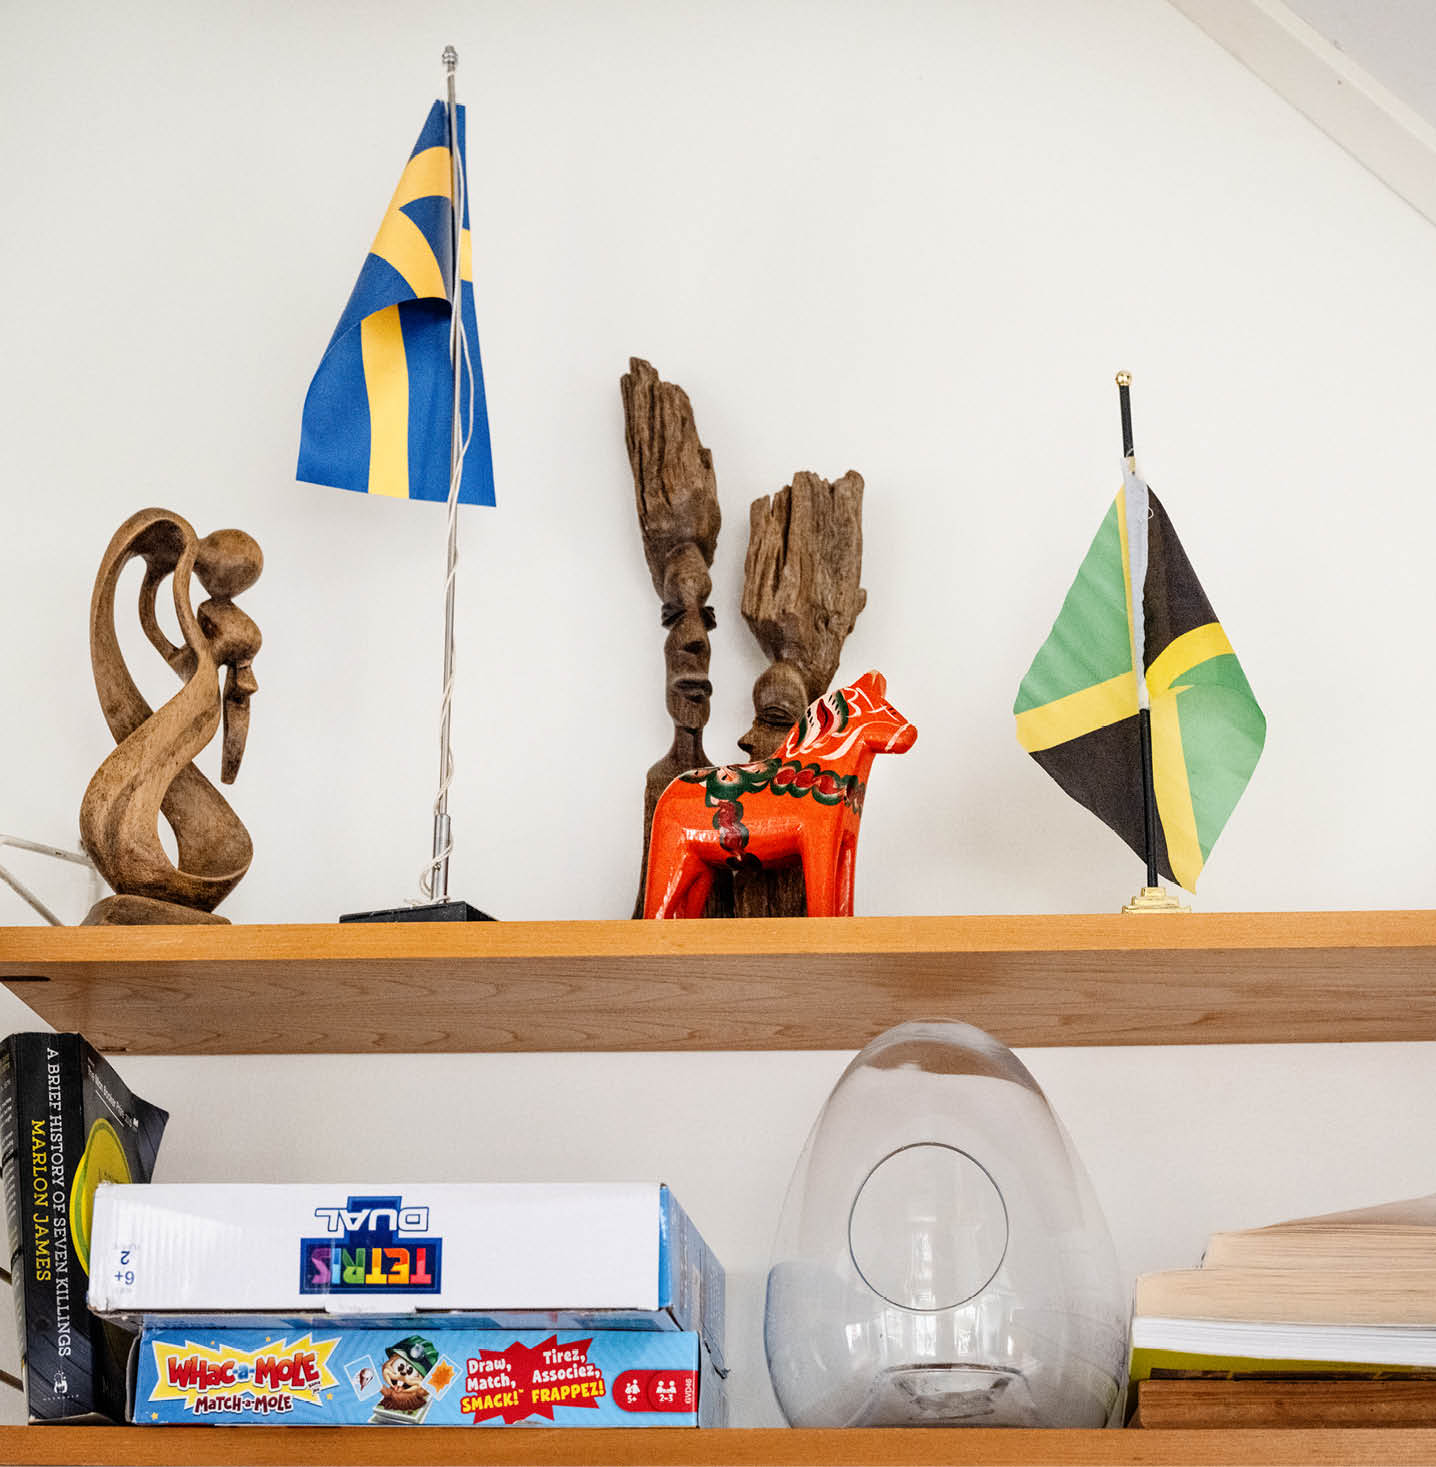 Sniderier i trä står tillsammans på en hylla med
bordsflaggor för den svenska och den jamaicanska flaggan. En dalahäst i
förgrunden. Spel och en ljuslykta står på hyllan nedanför. 